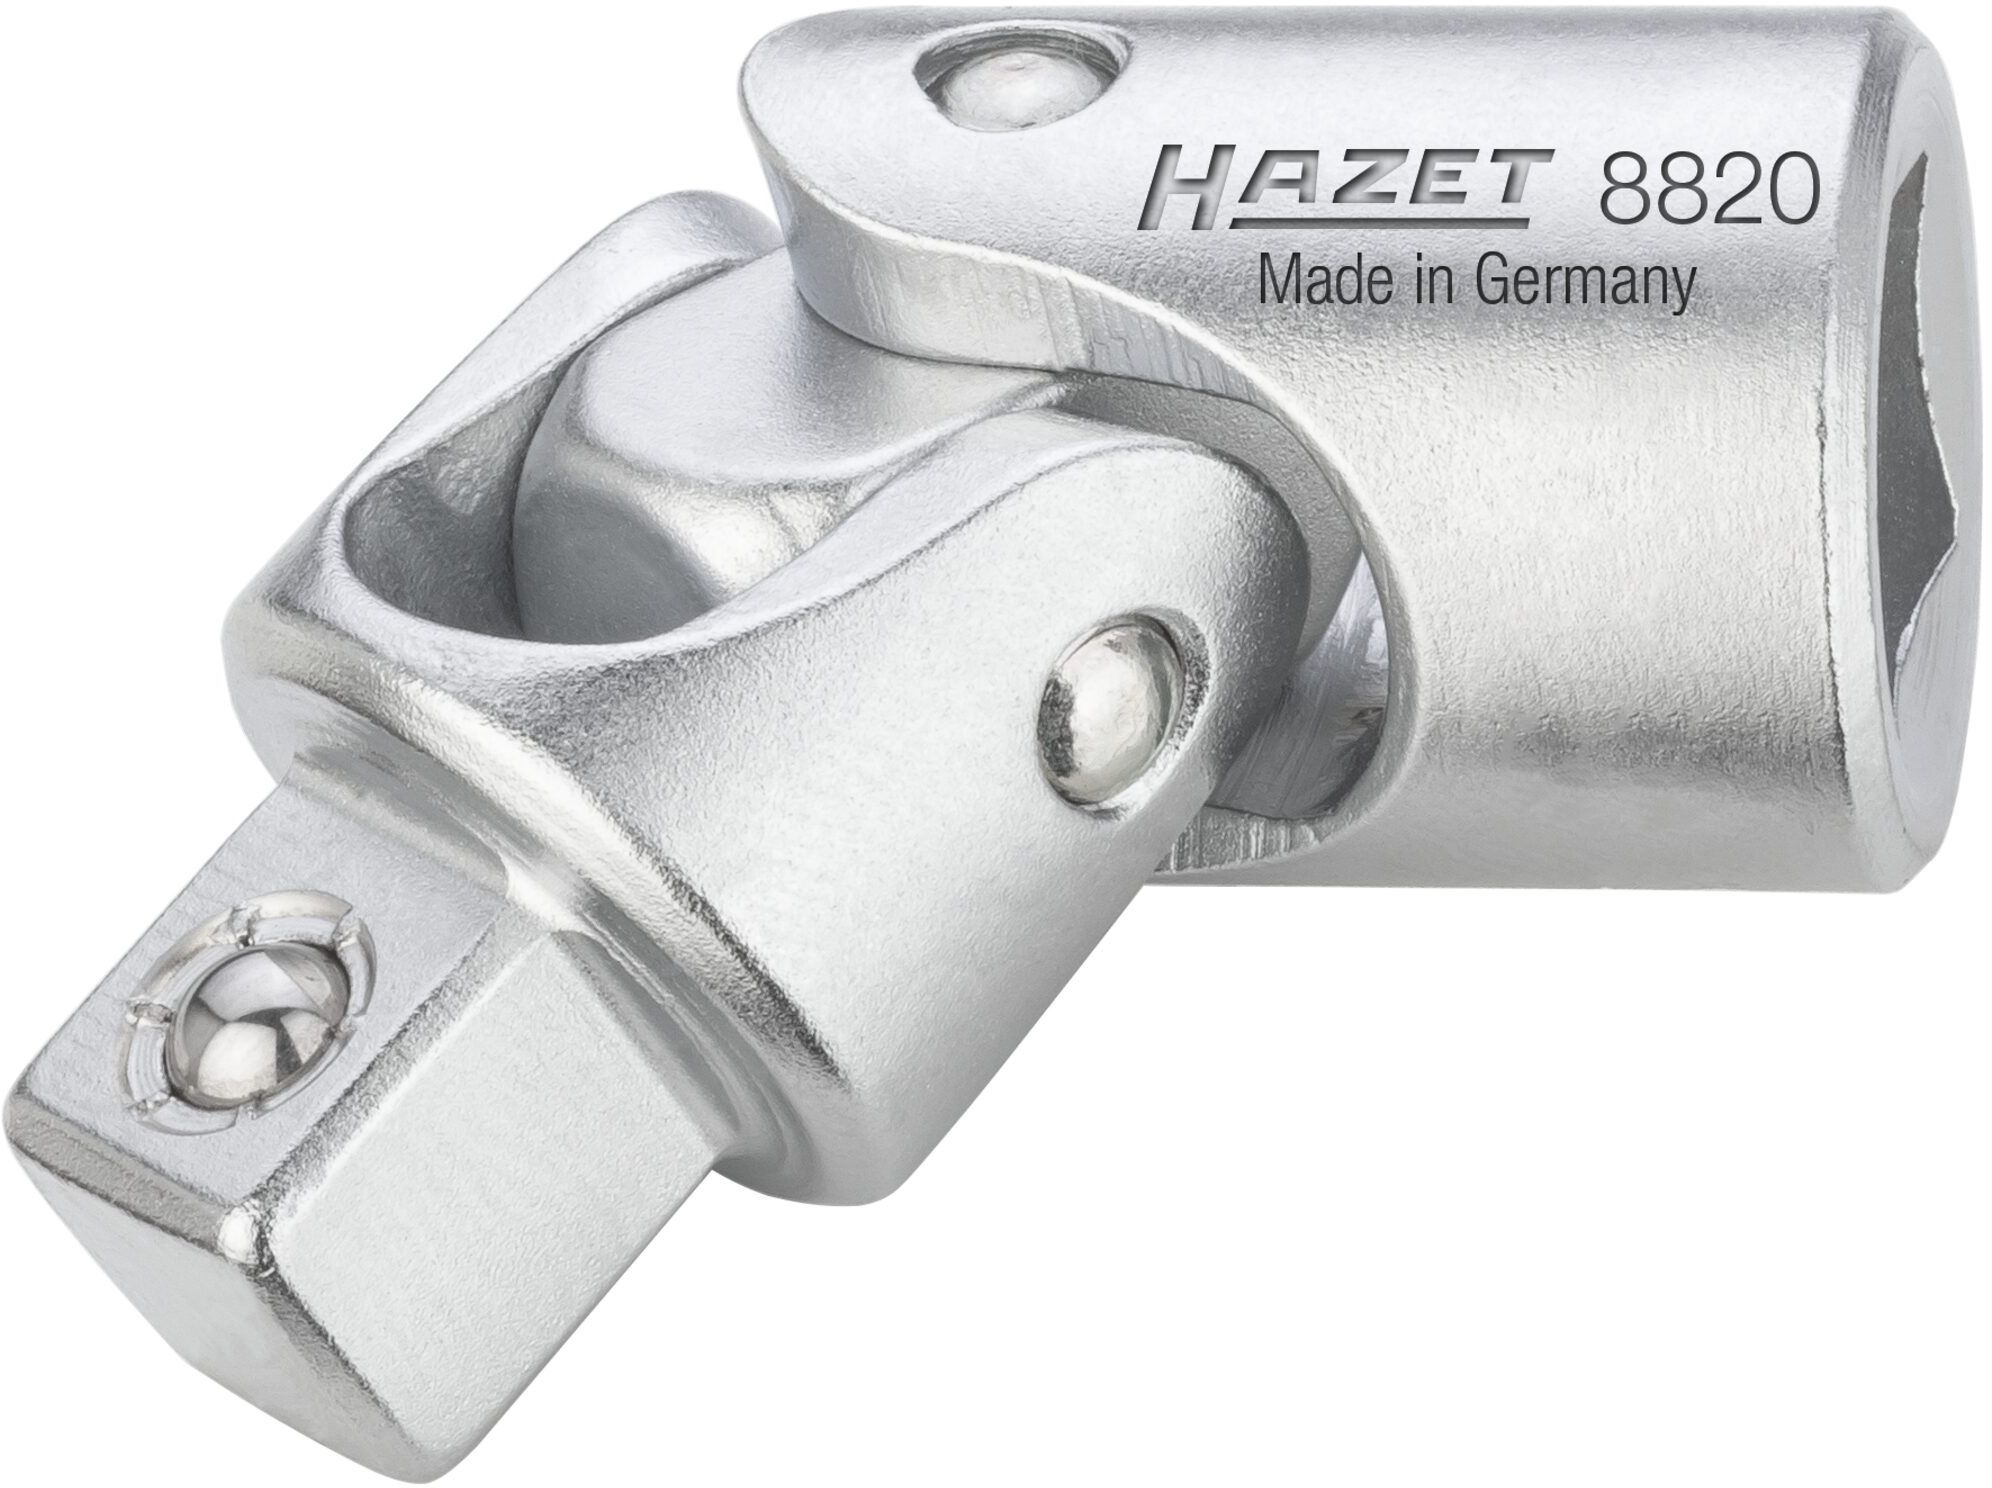 HAZET Universalgelenk 8820, 3/8", L: 46,5mm - Steck- und Drehmomentschlüssel